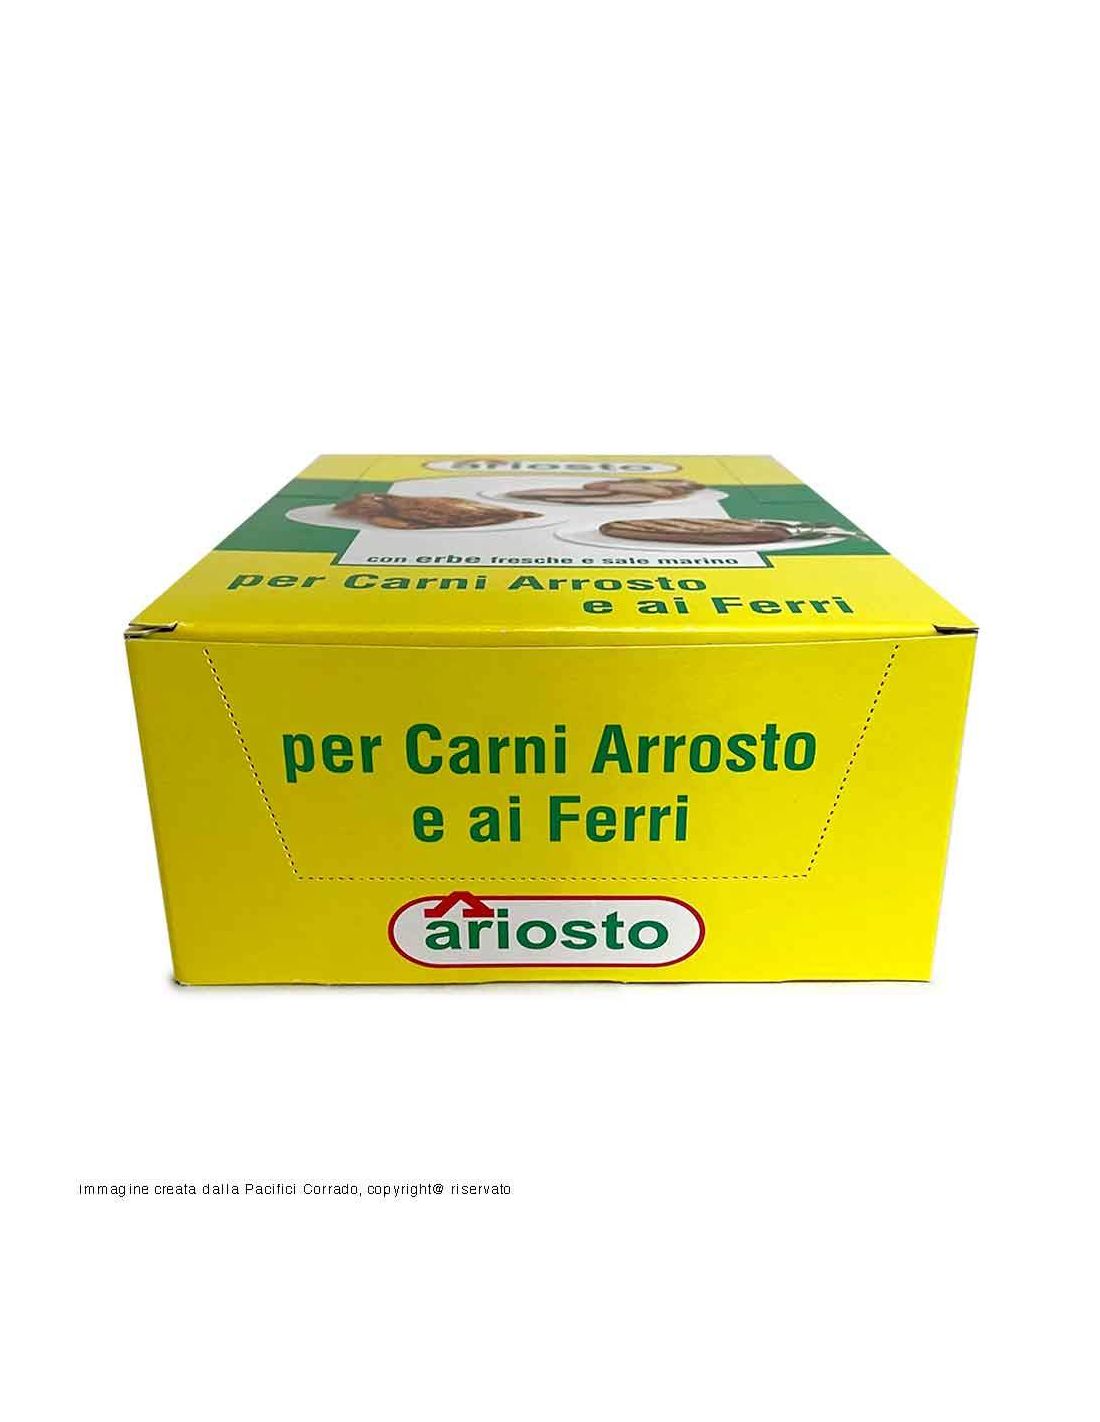 Ariosto insaporitore per carni arrosto conf. da 50pz da 10g